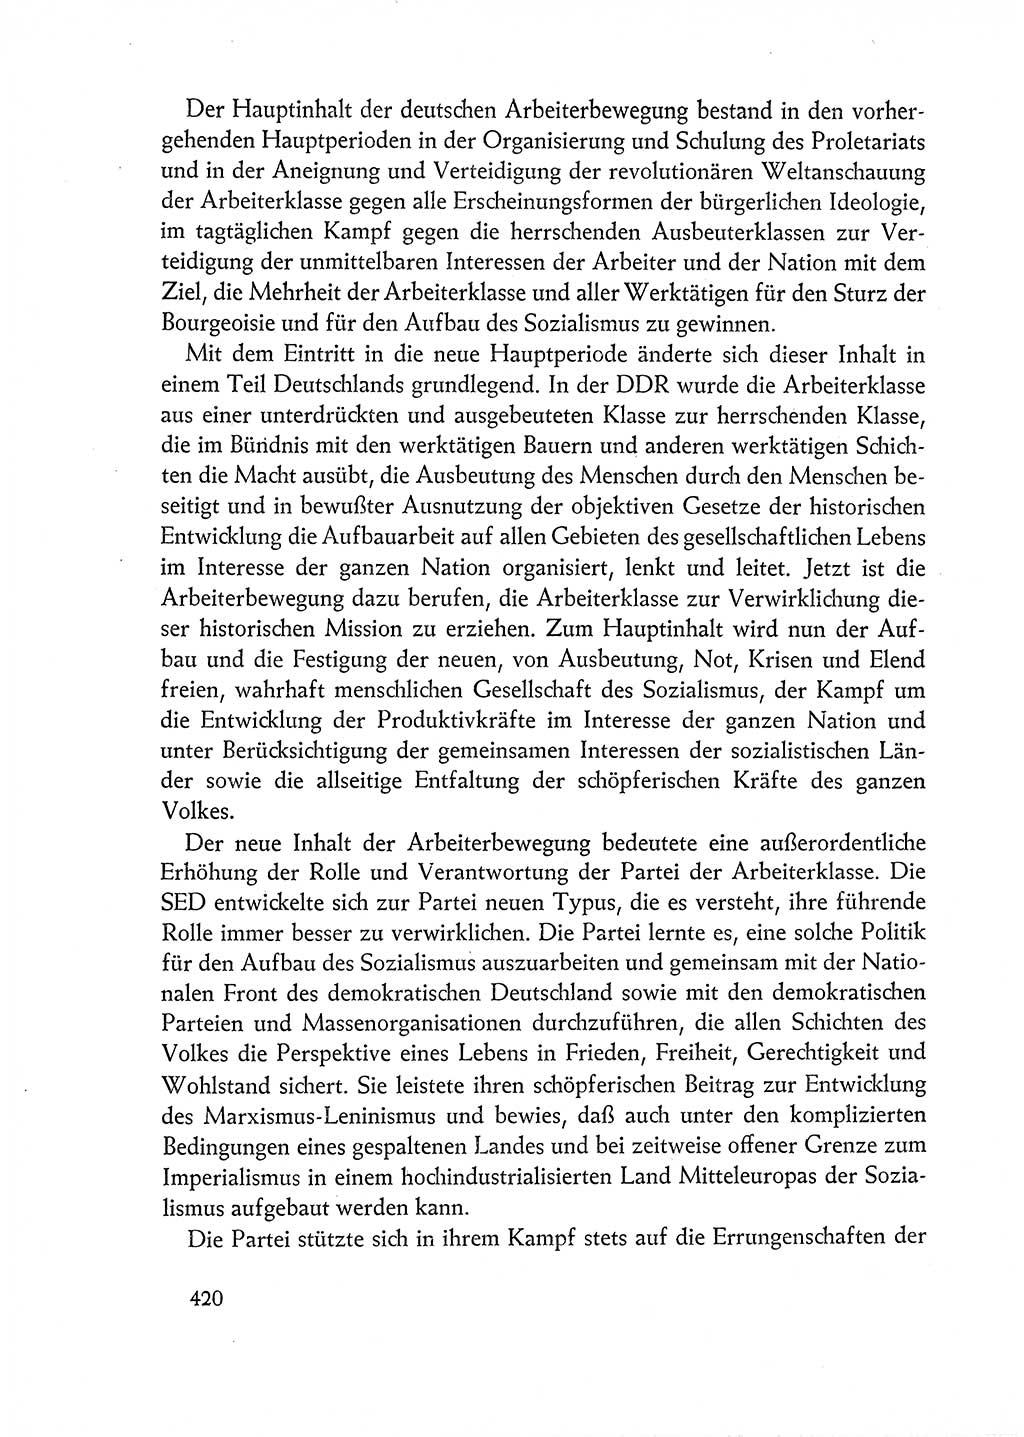 Dokumente der Sozialistischen Einheitspartei Deutschlands (SED) [Deutsche Demokratische Republik (DDR)] 1962-1963, Seite 420 (Dok. SED DDR 1962-1963, S. 420)